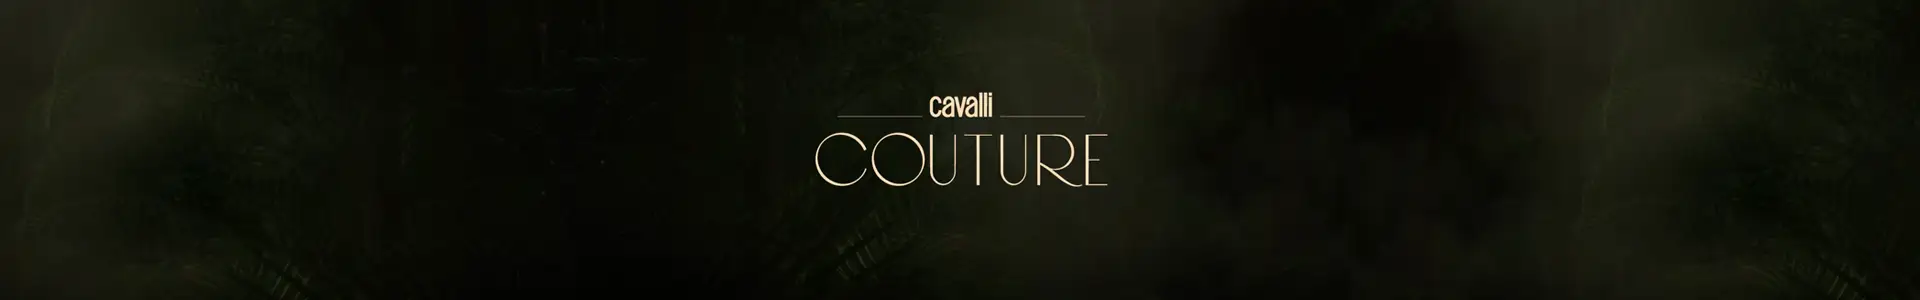 Damac Cavalli Couture Features